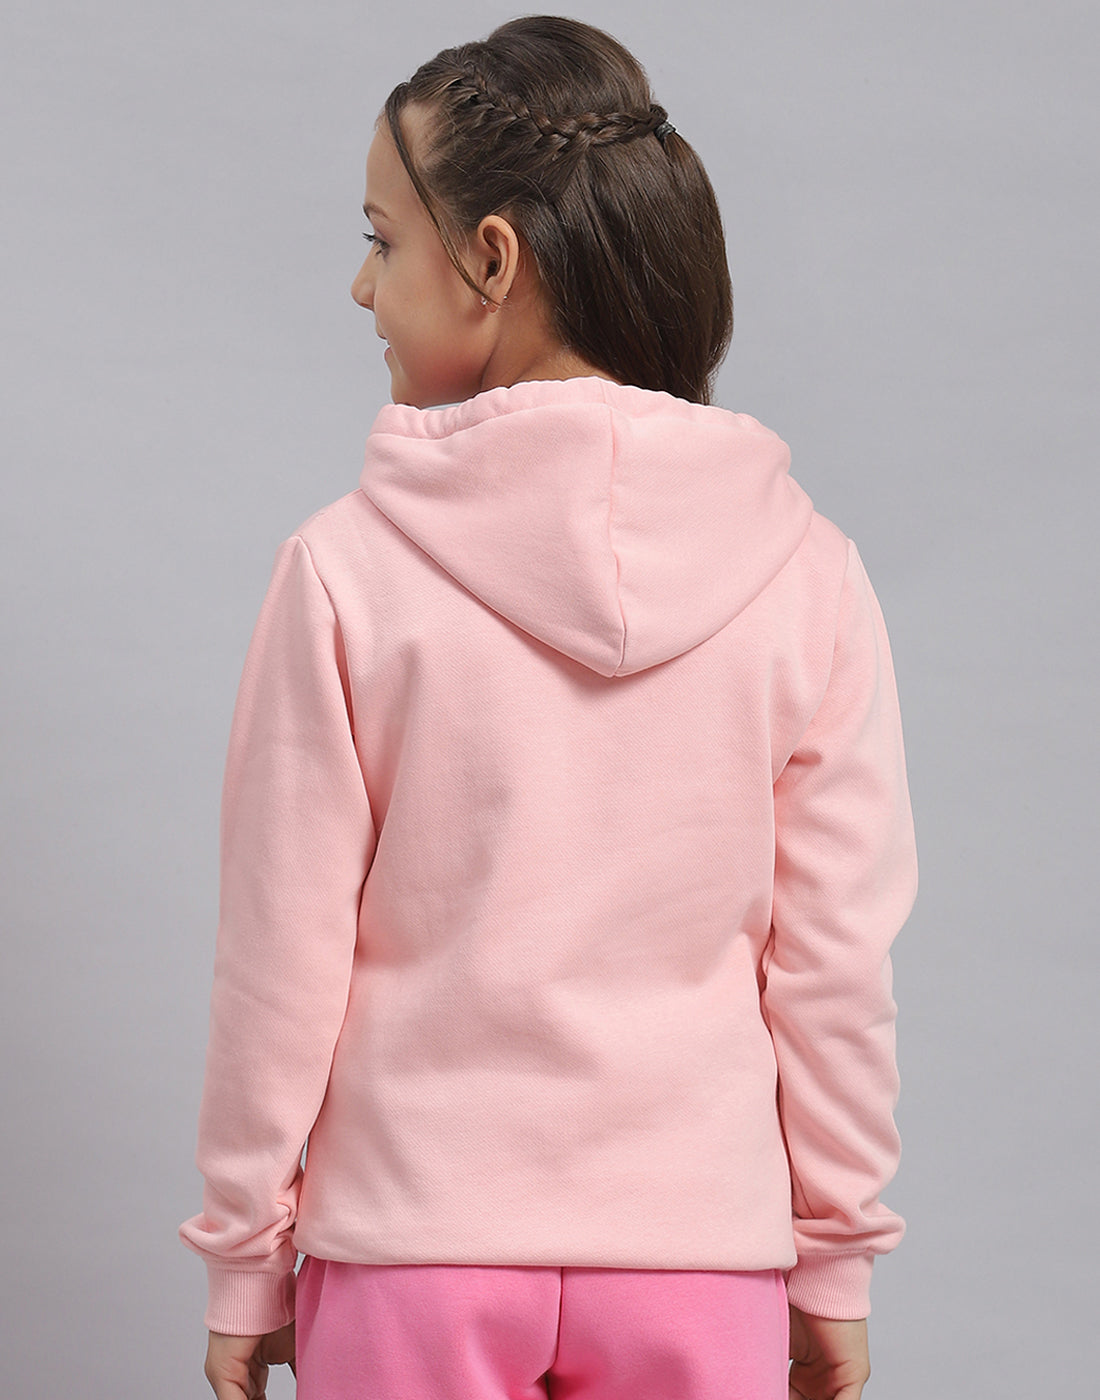 Girls Pink Printed Hooded Full Sleeve Sweatshirt